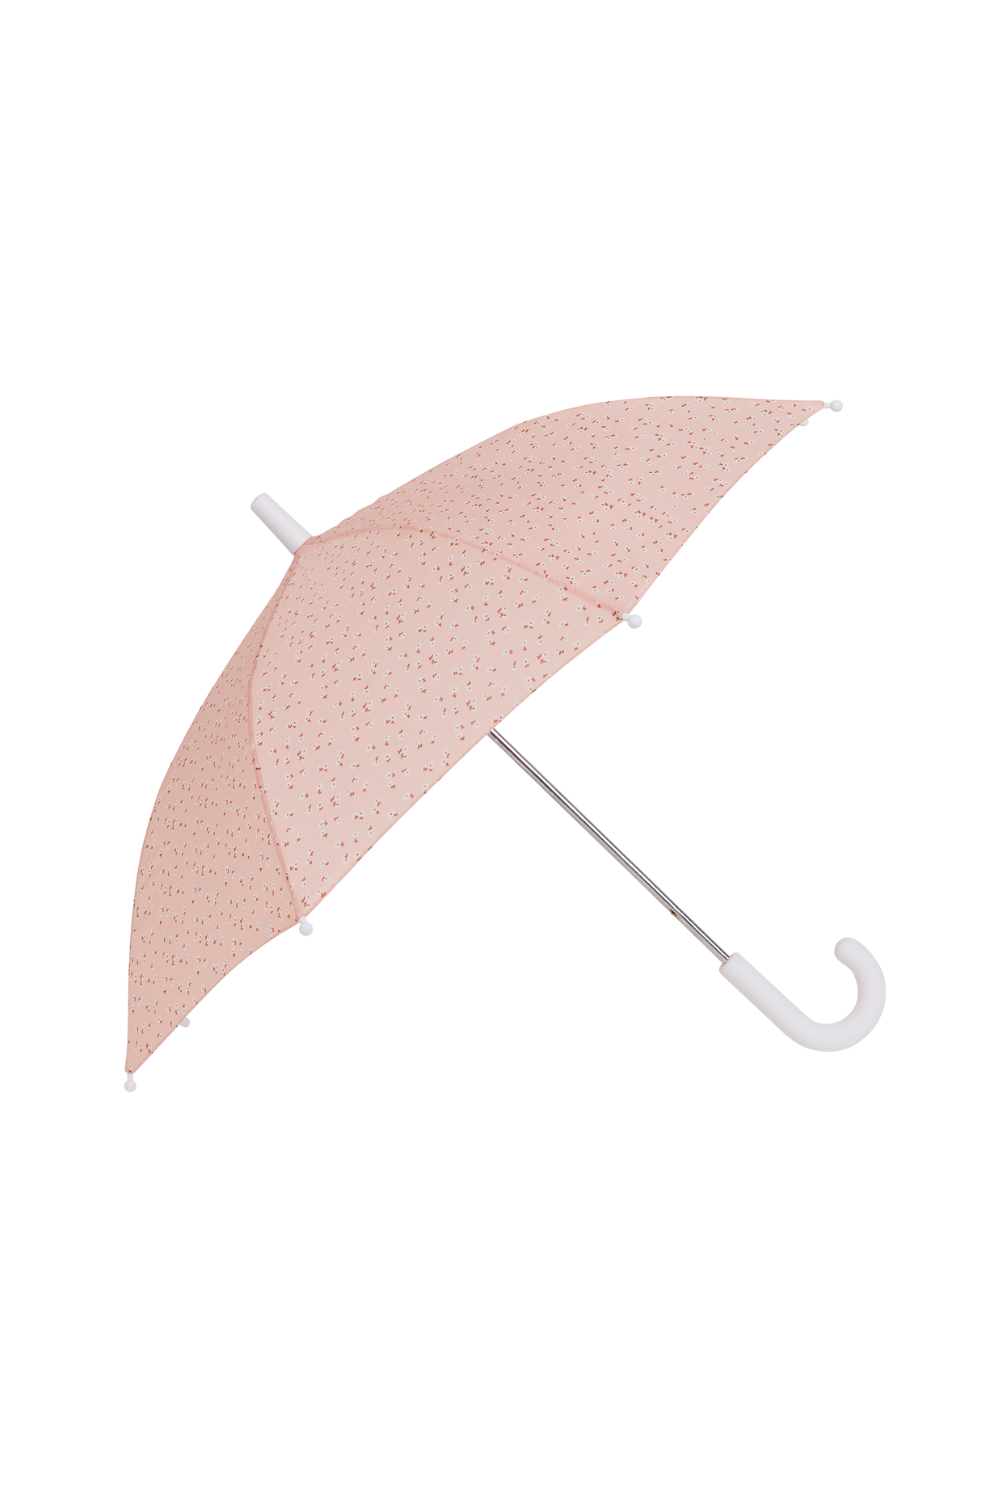 Olli Ella See-Ya Umbrella Pink Daisies: Stylish Rain Protection